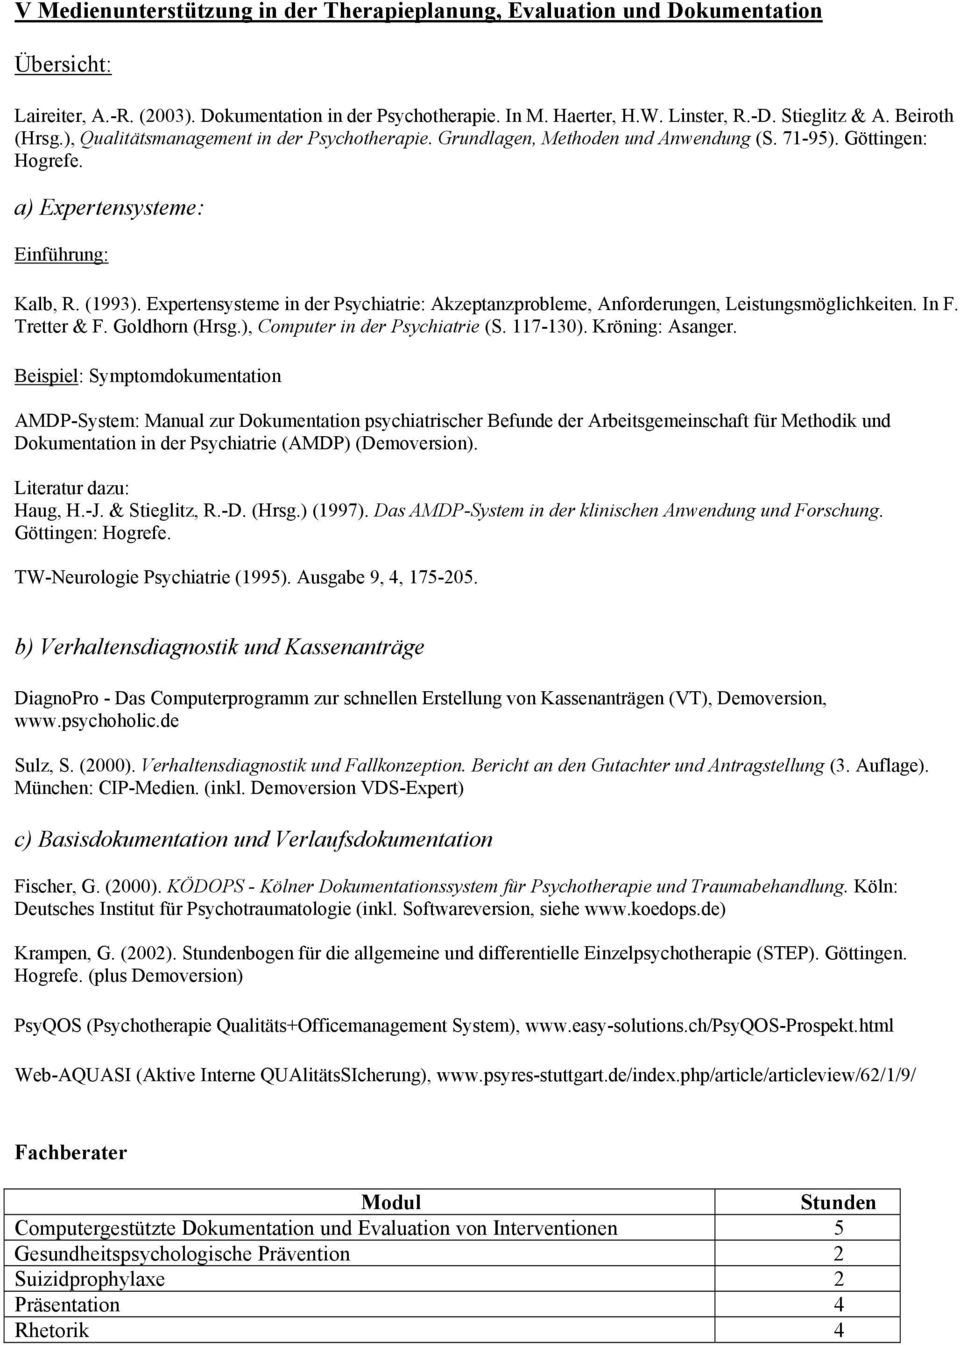 Expertensysteme in der Psychiatrie: Akzeptanzprobleme, Anforderungen, Leistungsmöglichkeiten. In F. Tretter & F. Goldhorn (Hrsg.), Computer in der Psychiatrie (S. 117-130). Kröning: Asanger.